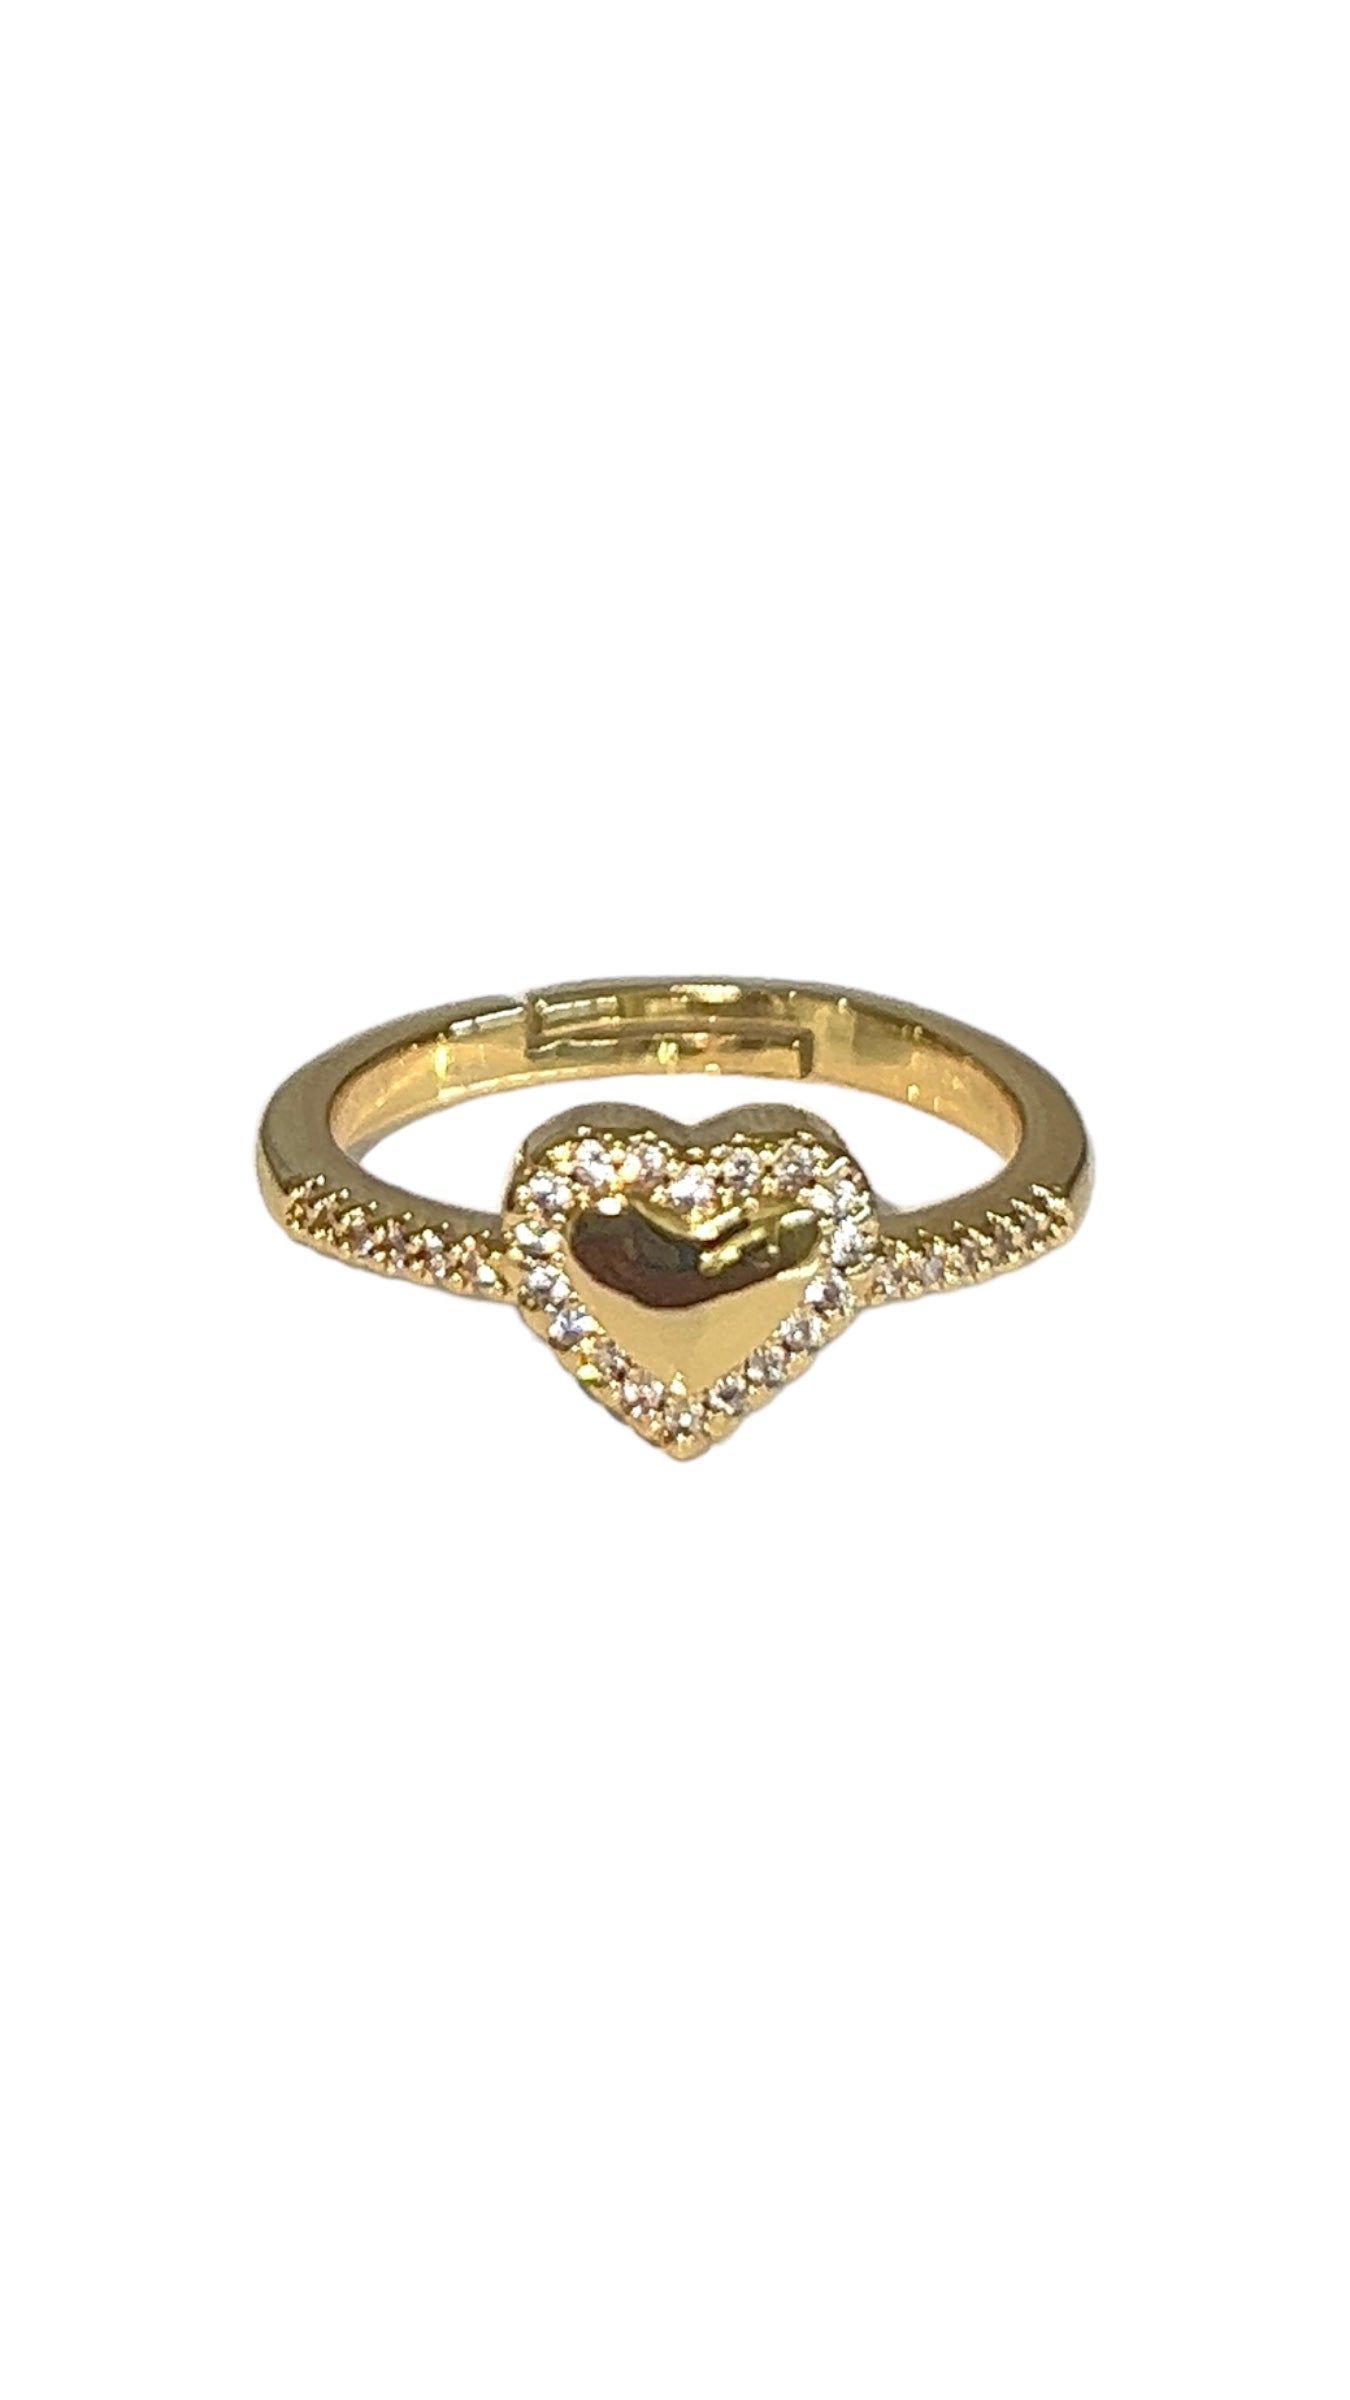 “Ily” 24k gold filled adjustable ring